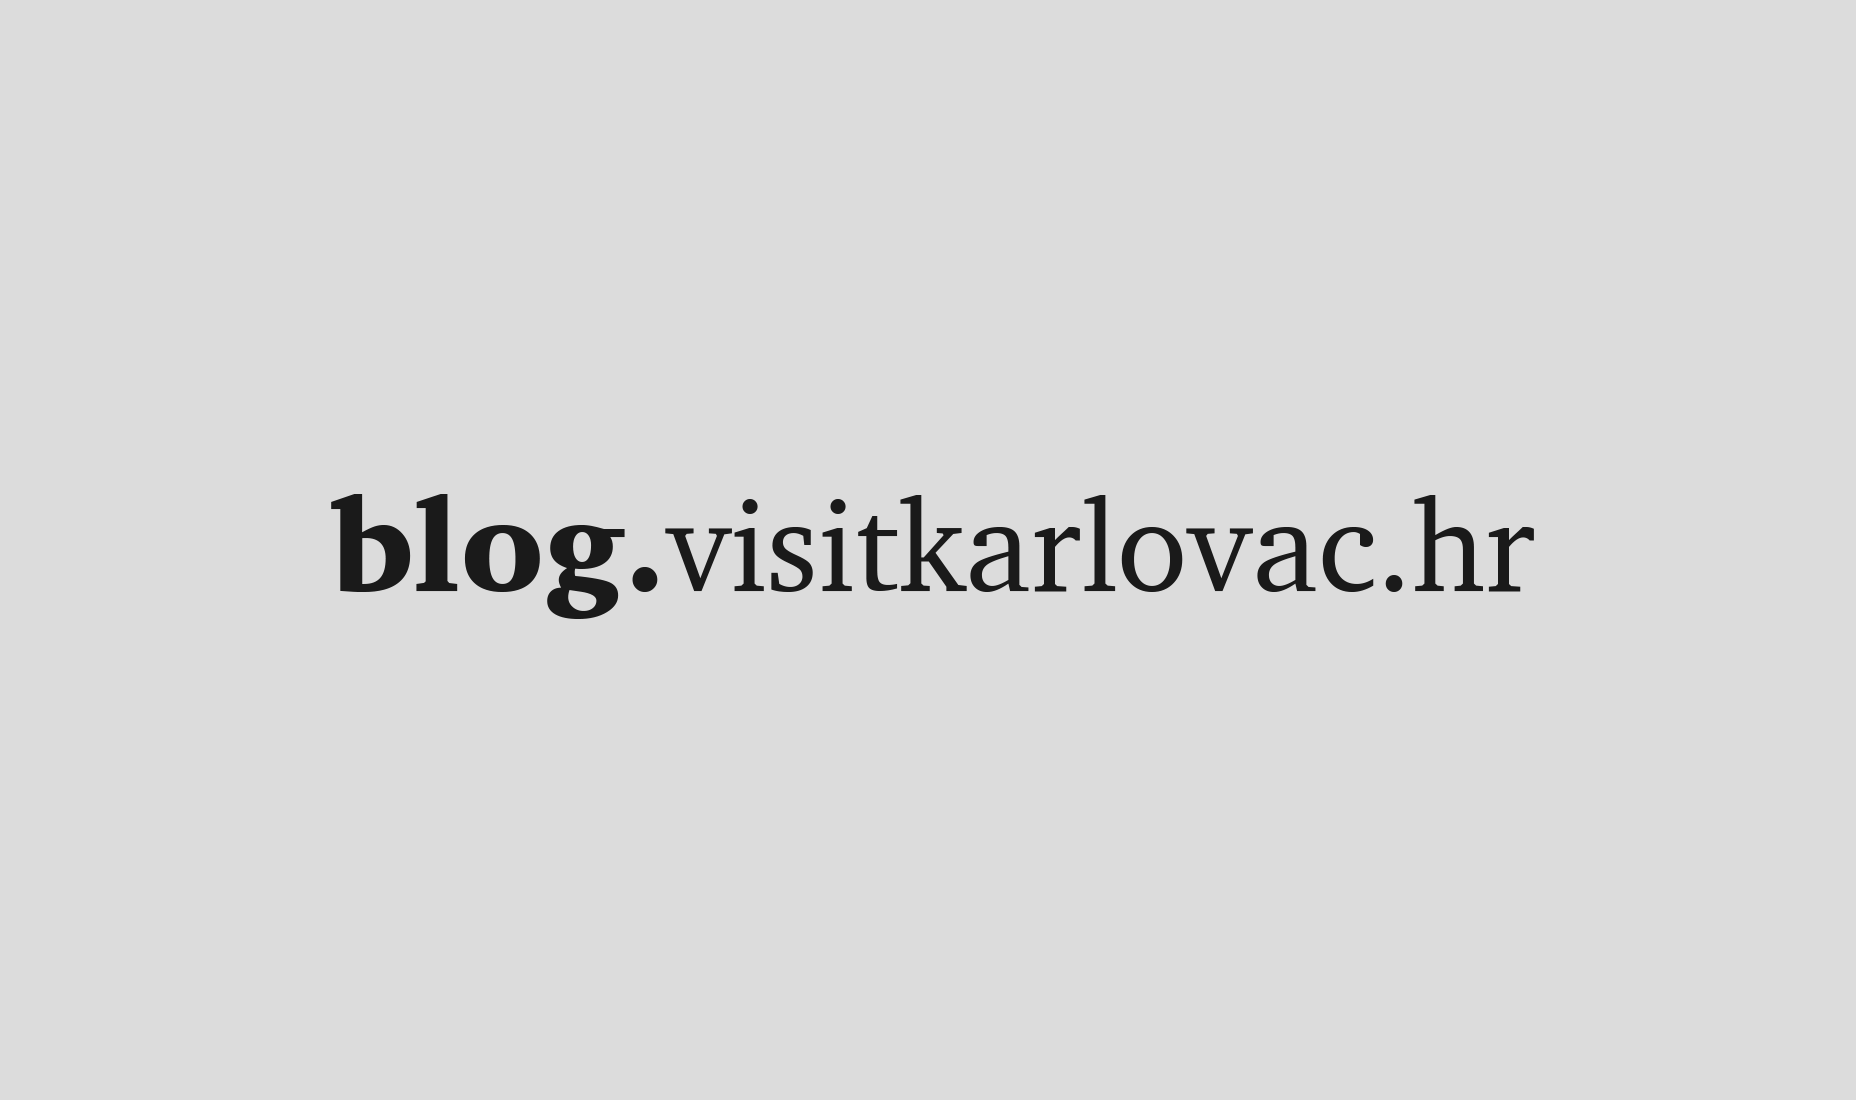 Visit Karlovac